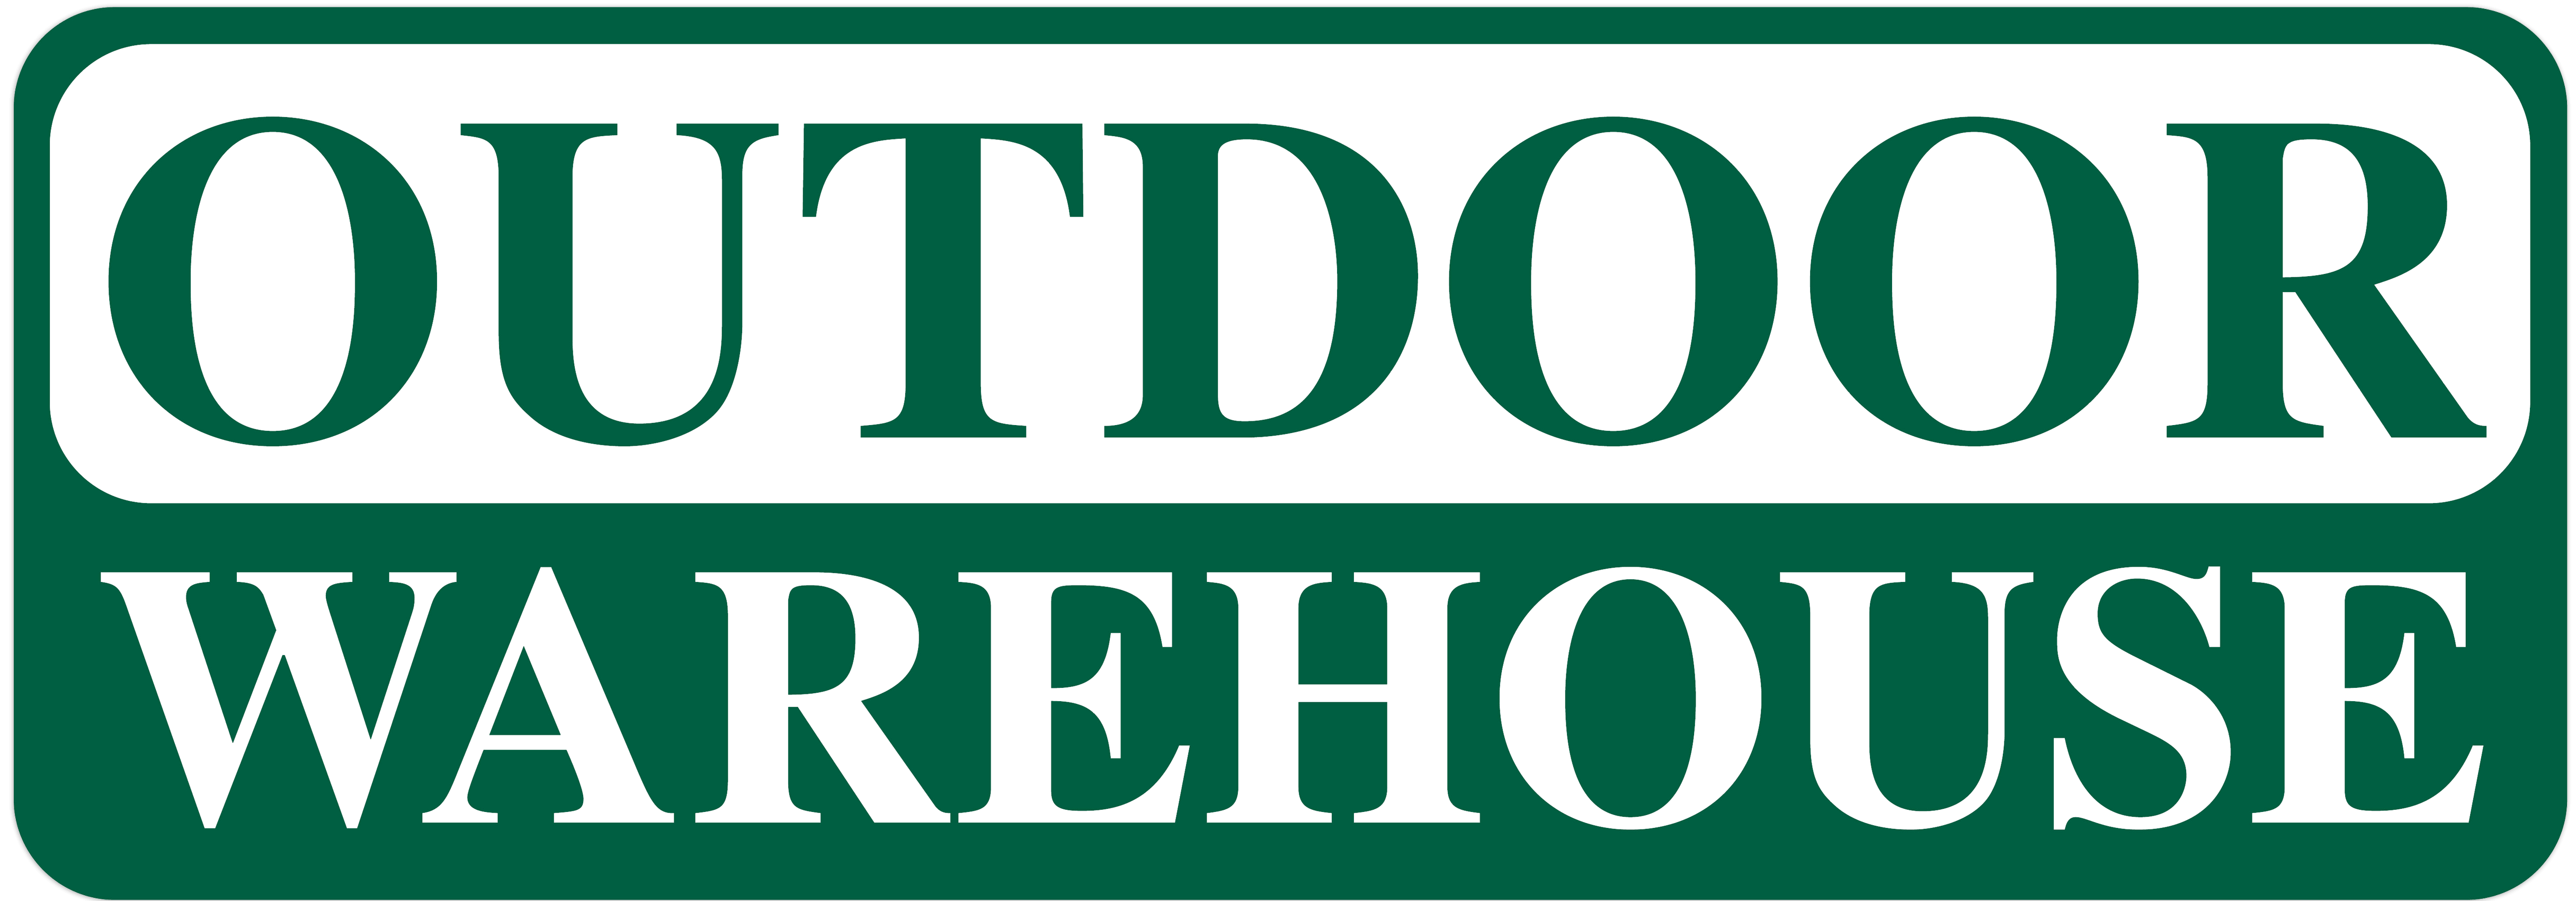 Outdoor warehouse logo